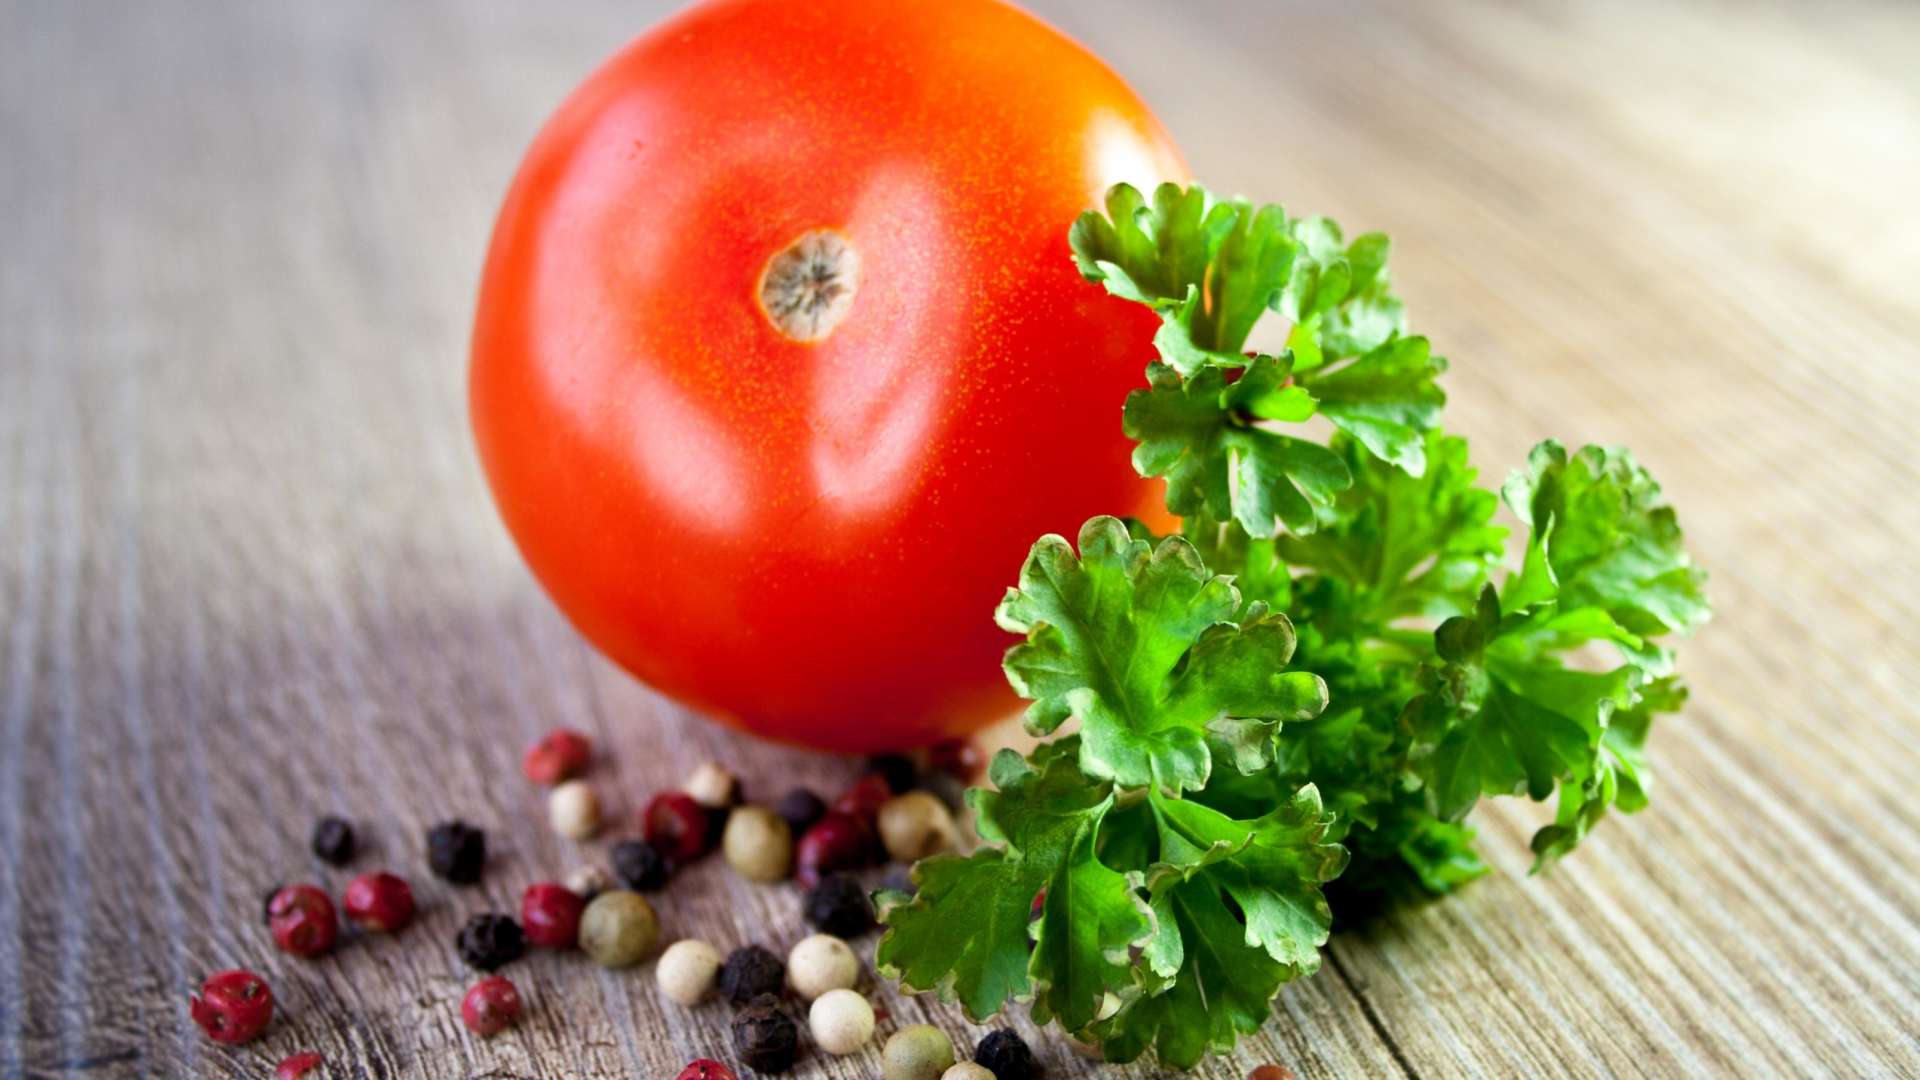 Punainen tomaatti, vihreätä salaattia ja erivärisiä pippureita pöydällä. Pippureita on mustia, punaisia ja valkoisia.